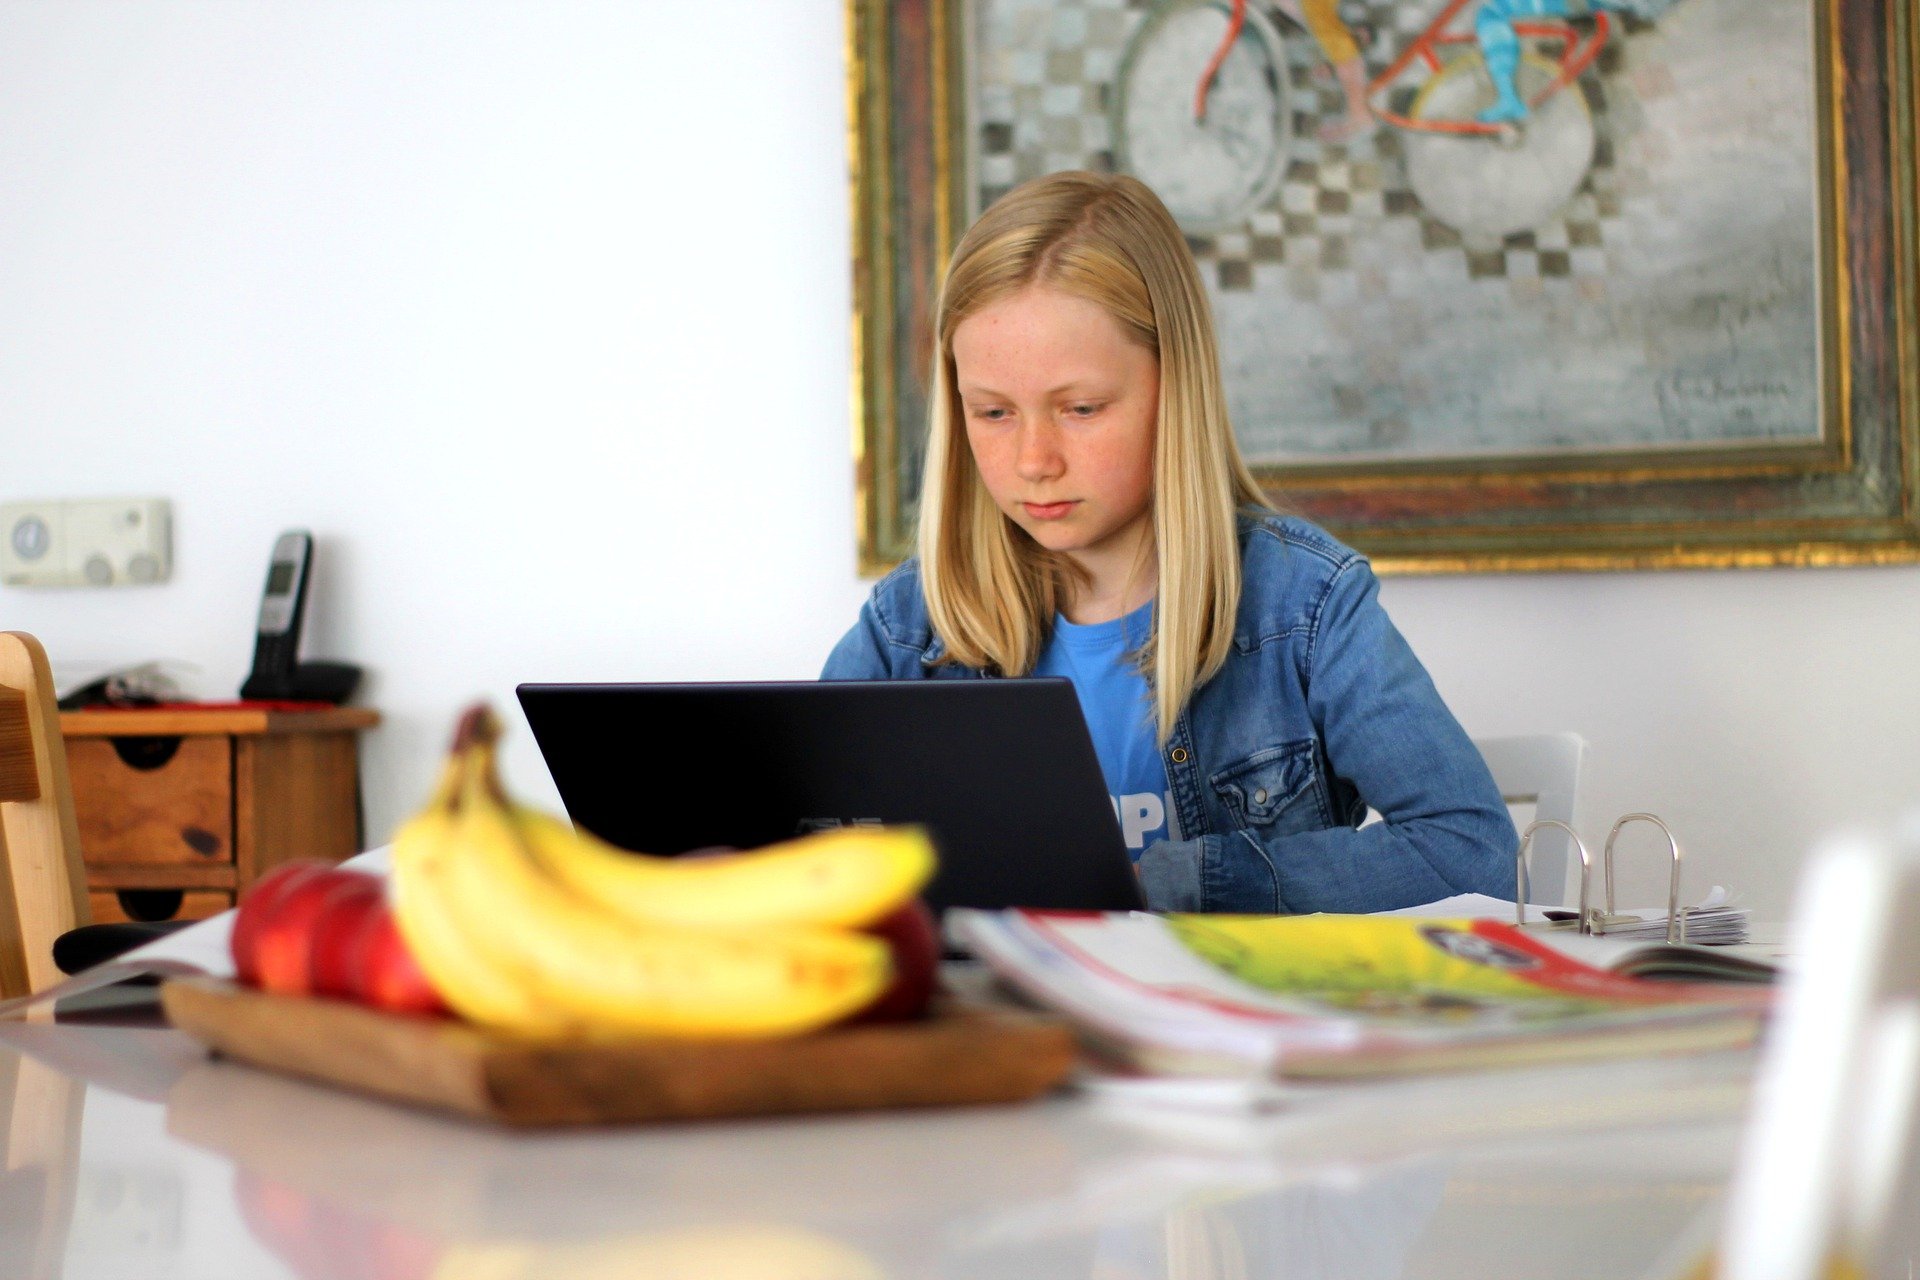 Детское онлайн-мероприятие прошло во Дворце культуры Щербинки